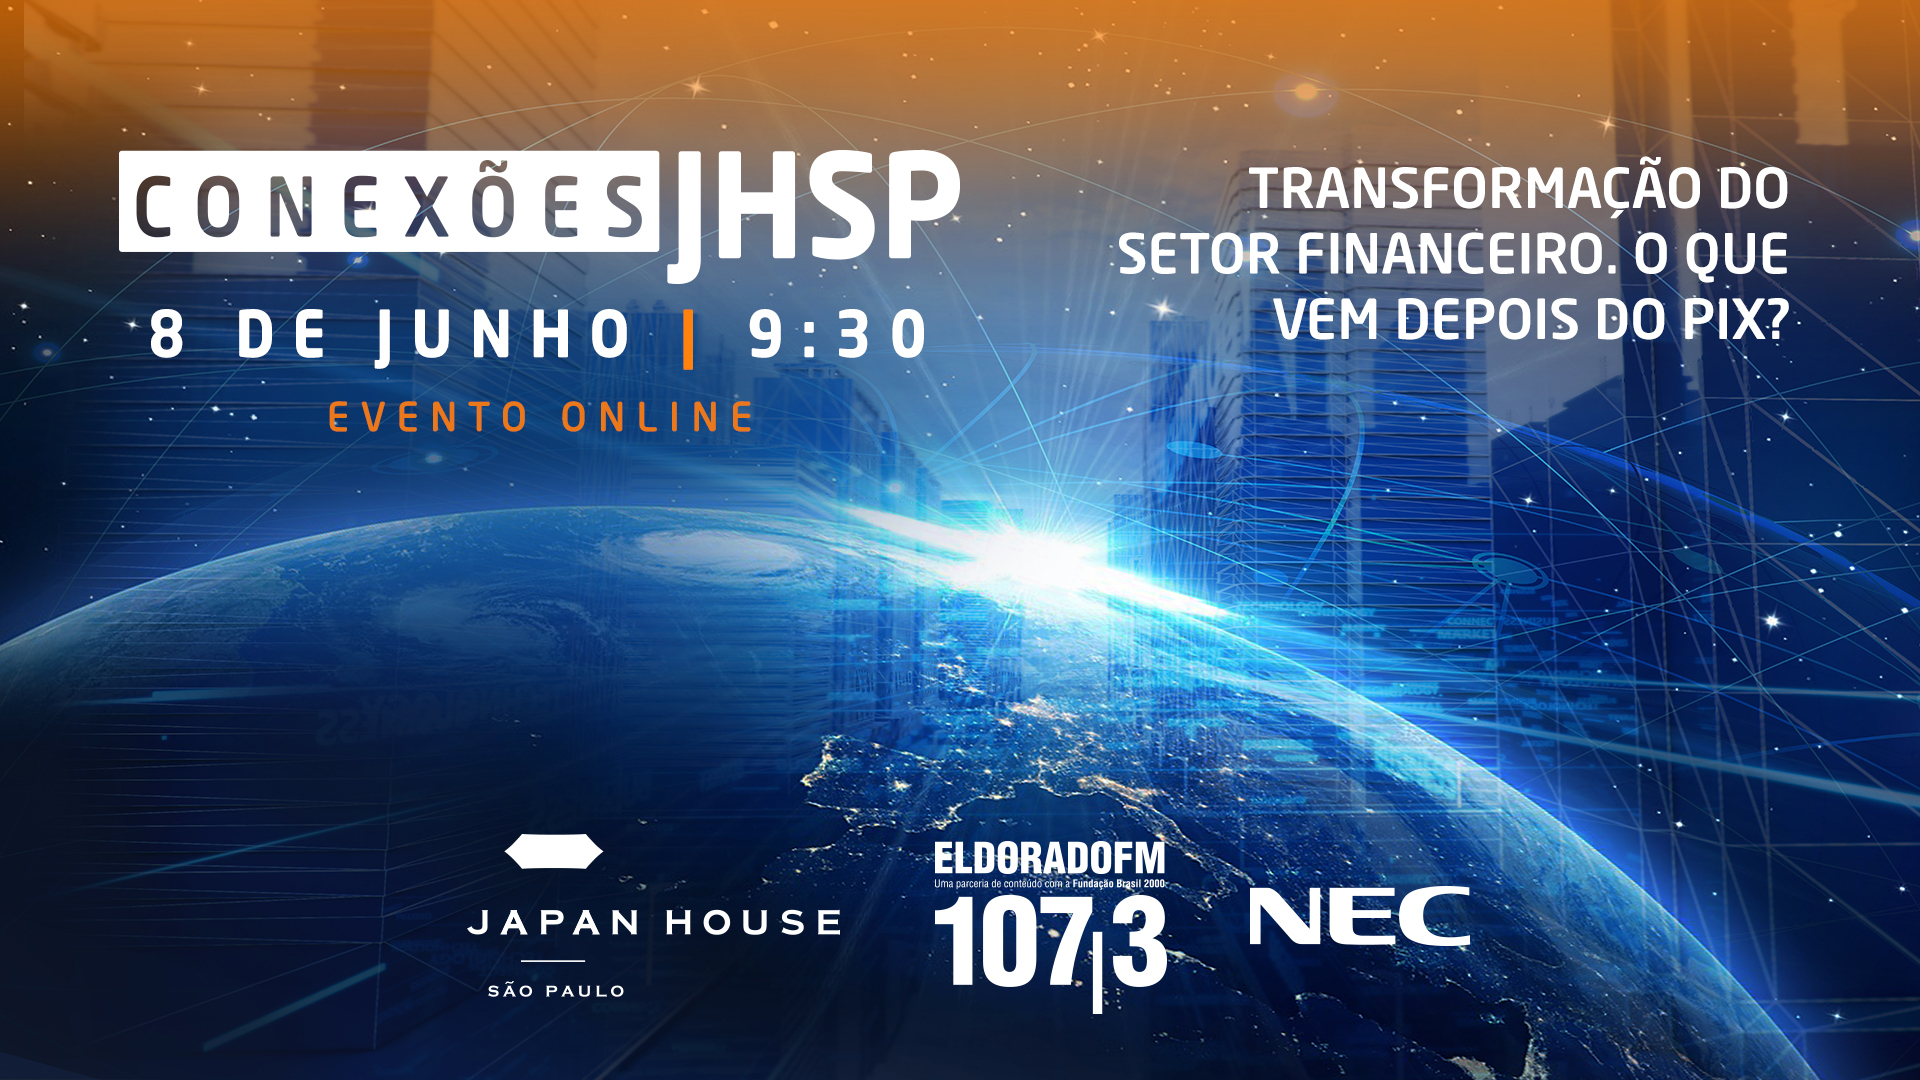 Japan House São Paulo promove webinar sobre as transformações digitais no setor financeiro